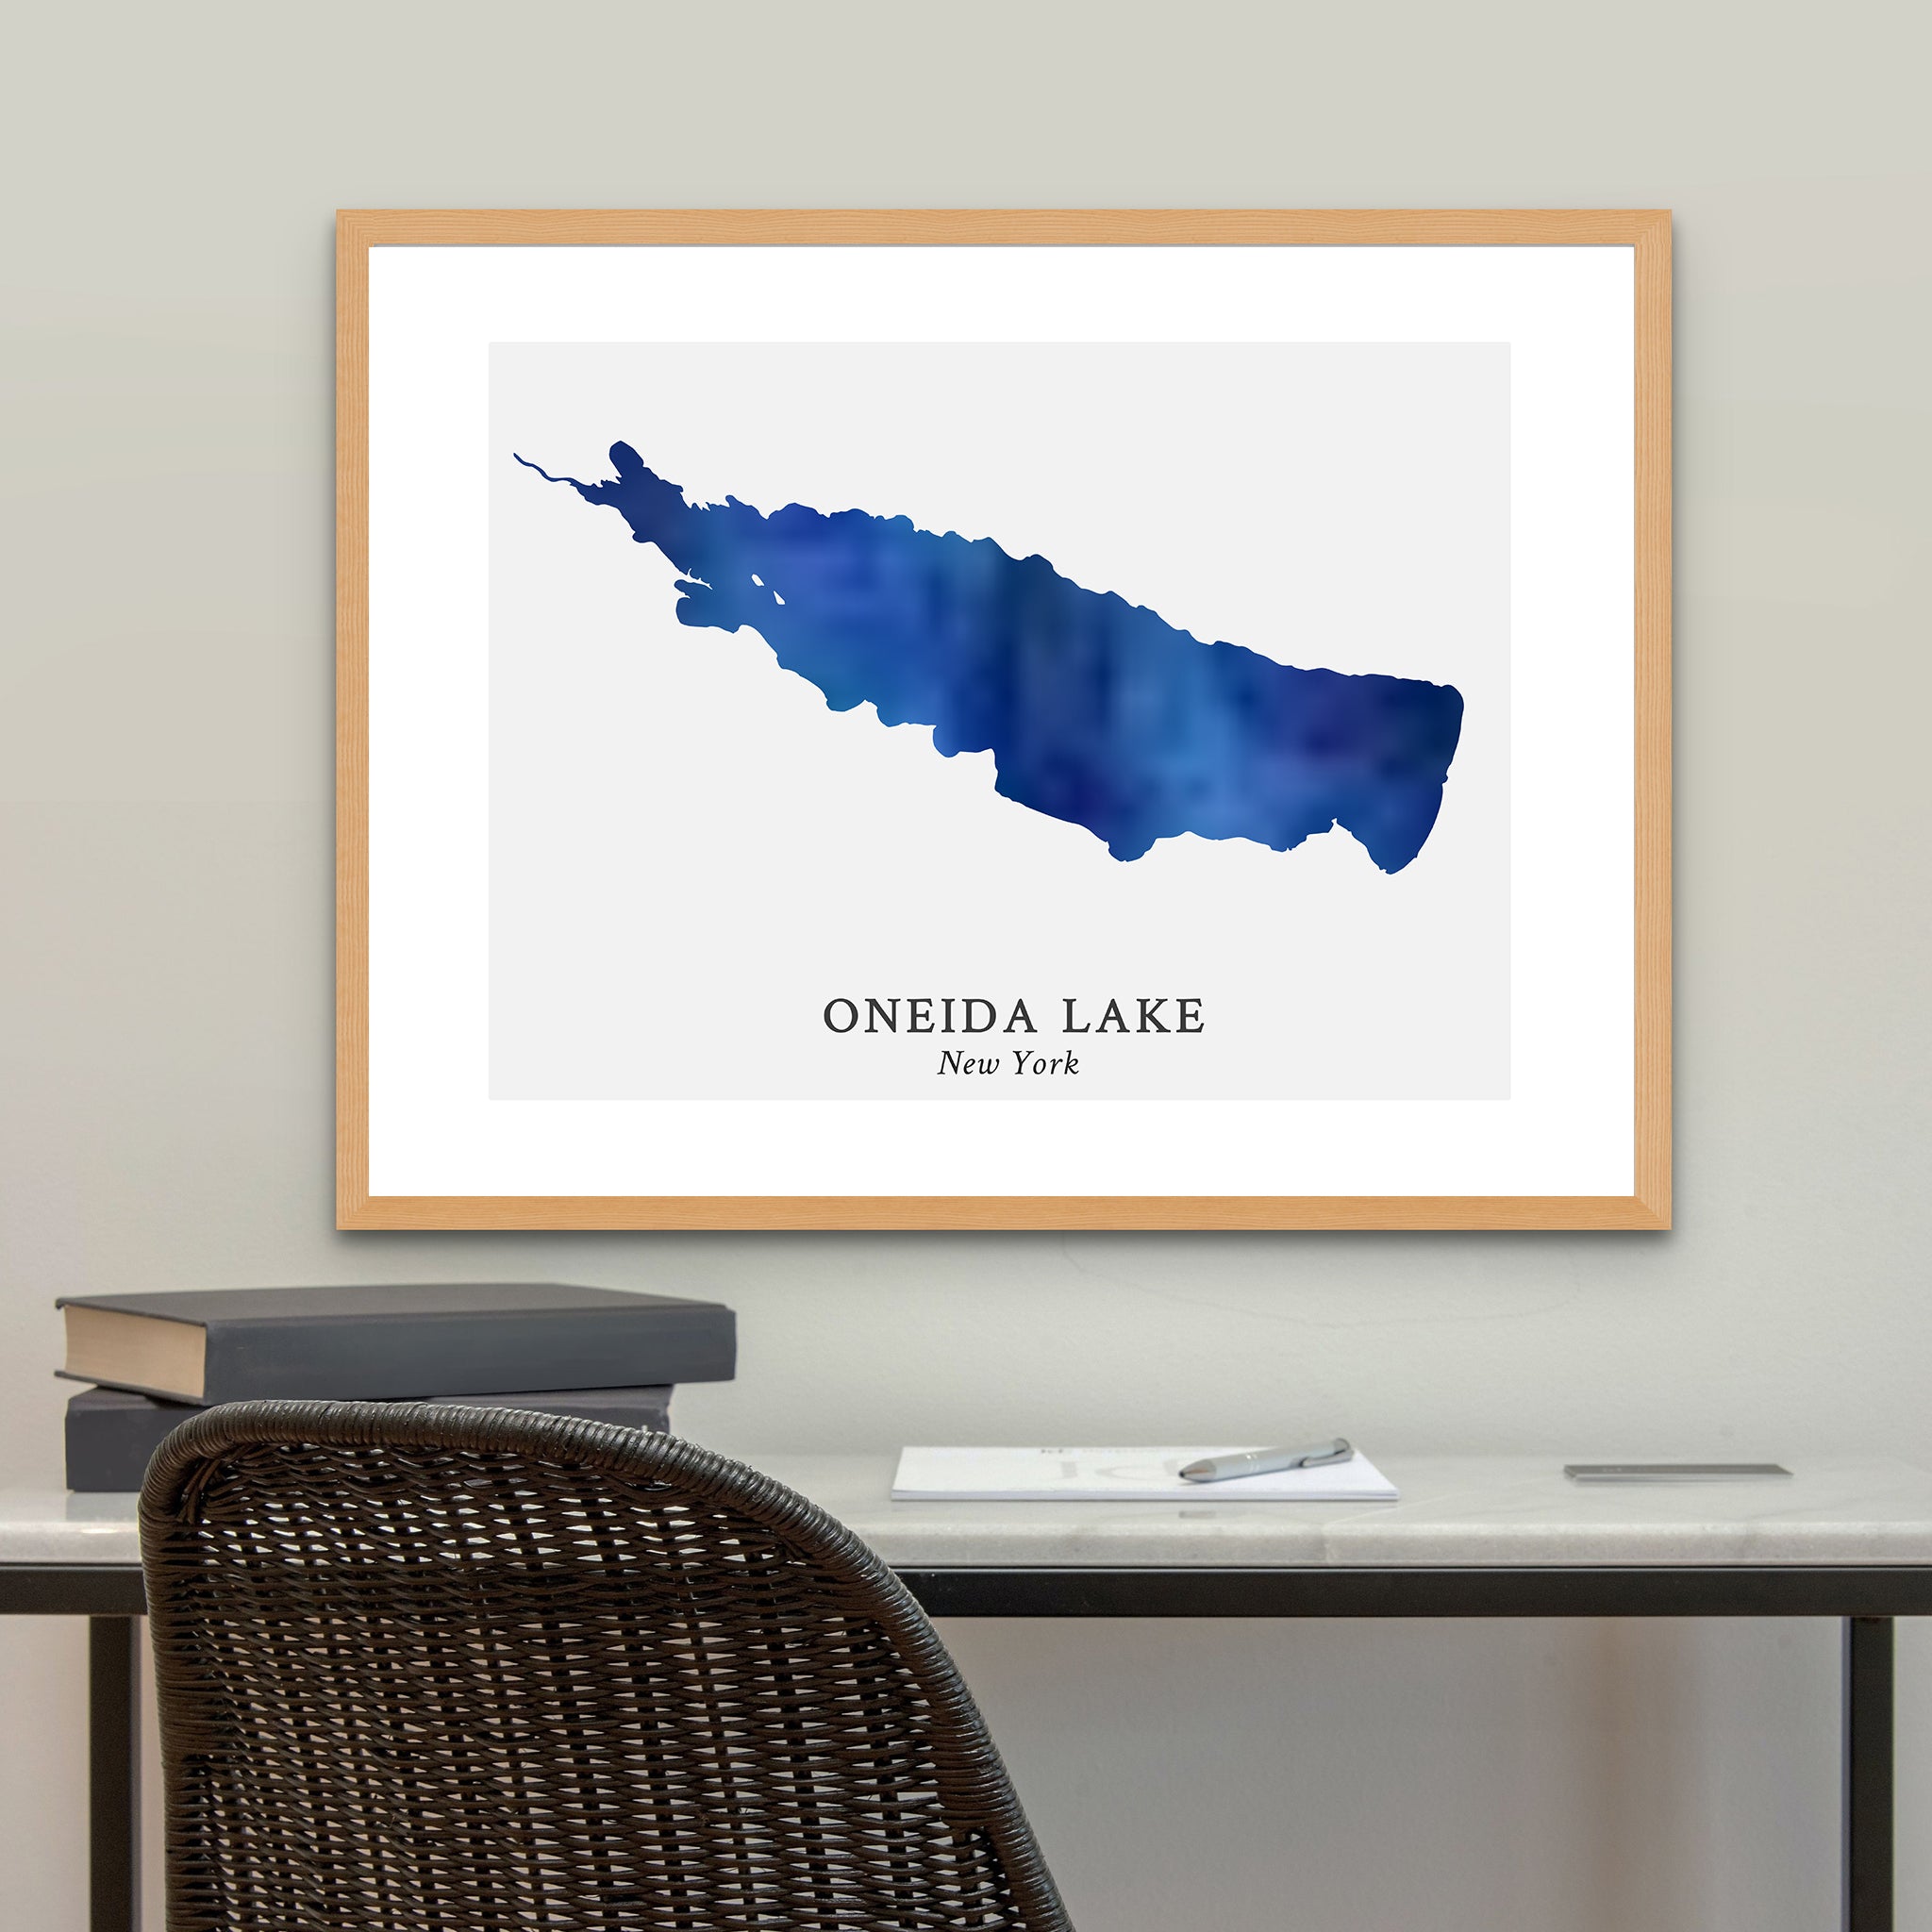 New York - Oneida Lake Map